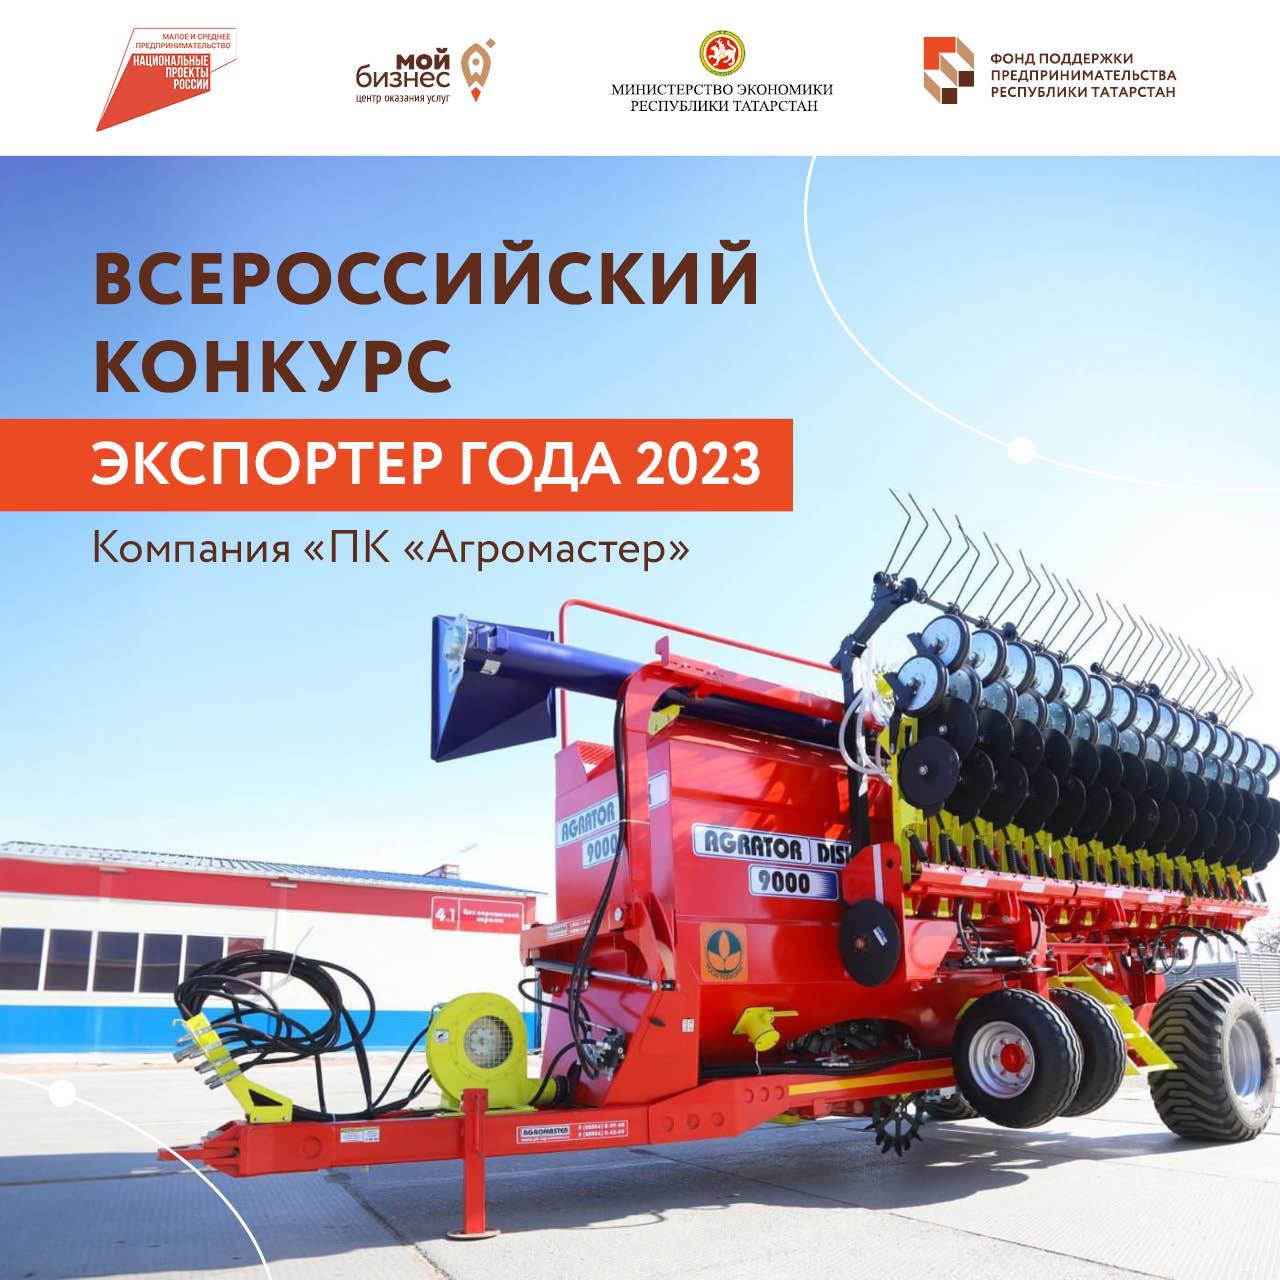 Список лучших экспортеров страны пополнился еще одной татарстанской компаний «ПК «Агромастер».